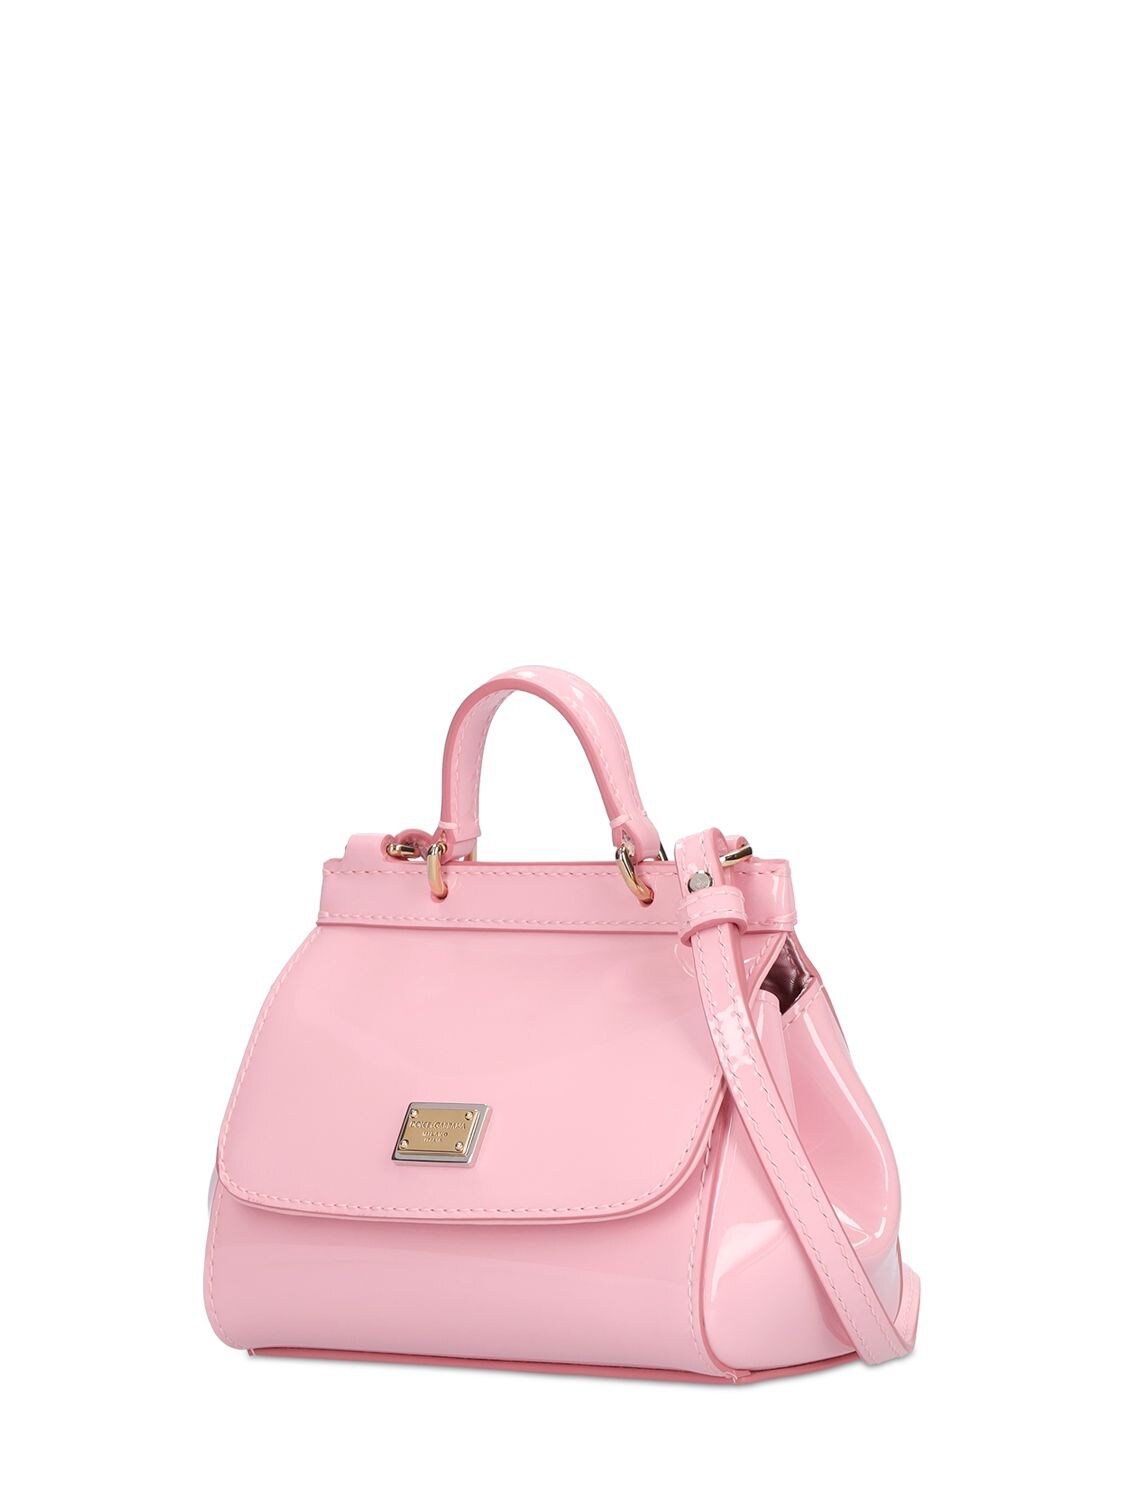 Dolce & Gabbana Sicily Patent Leather Shoulder Bag - Pink